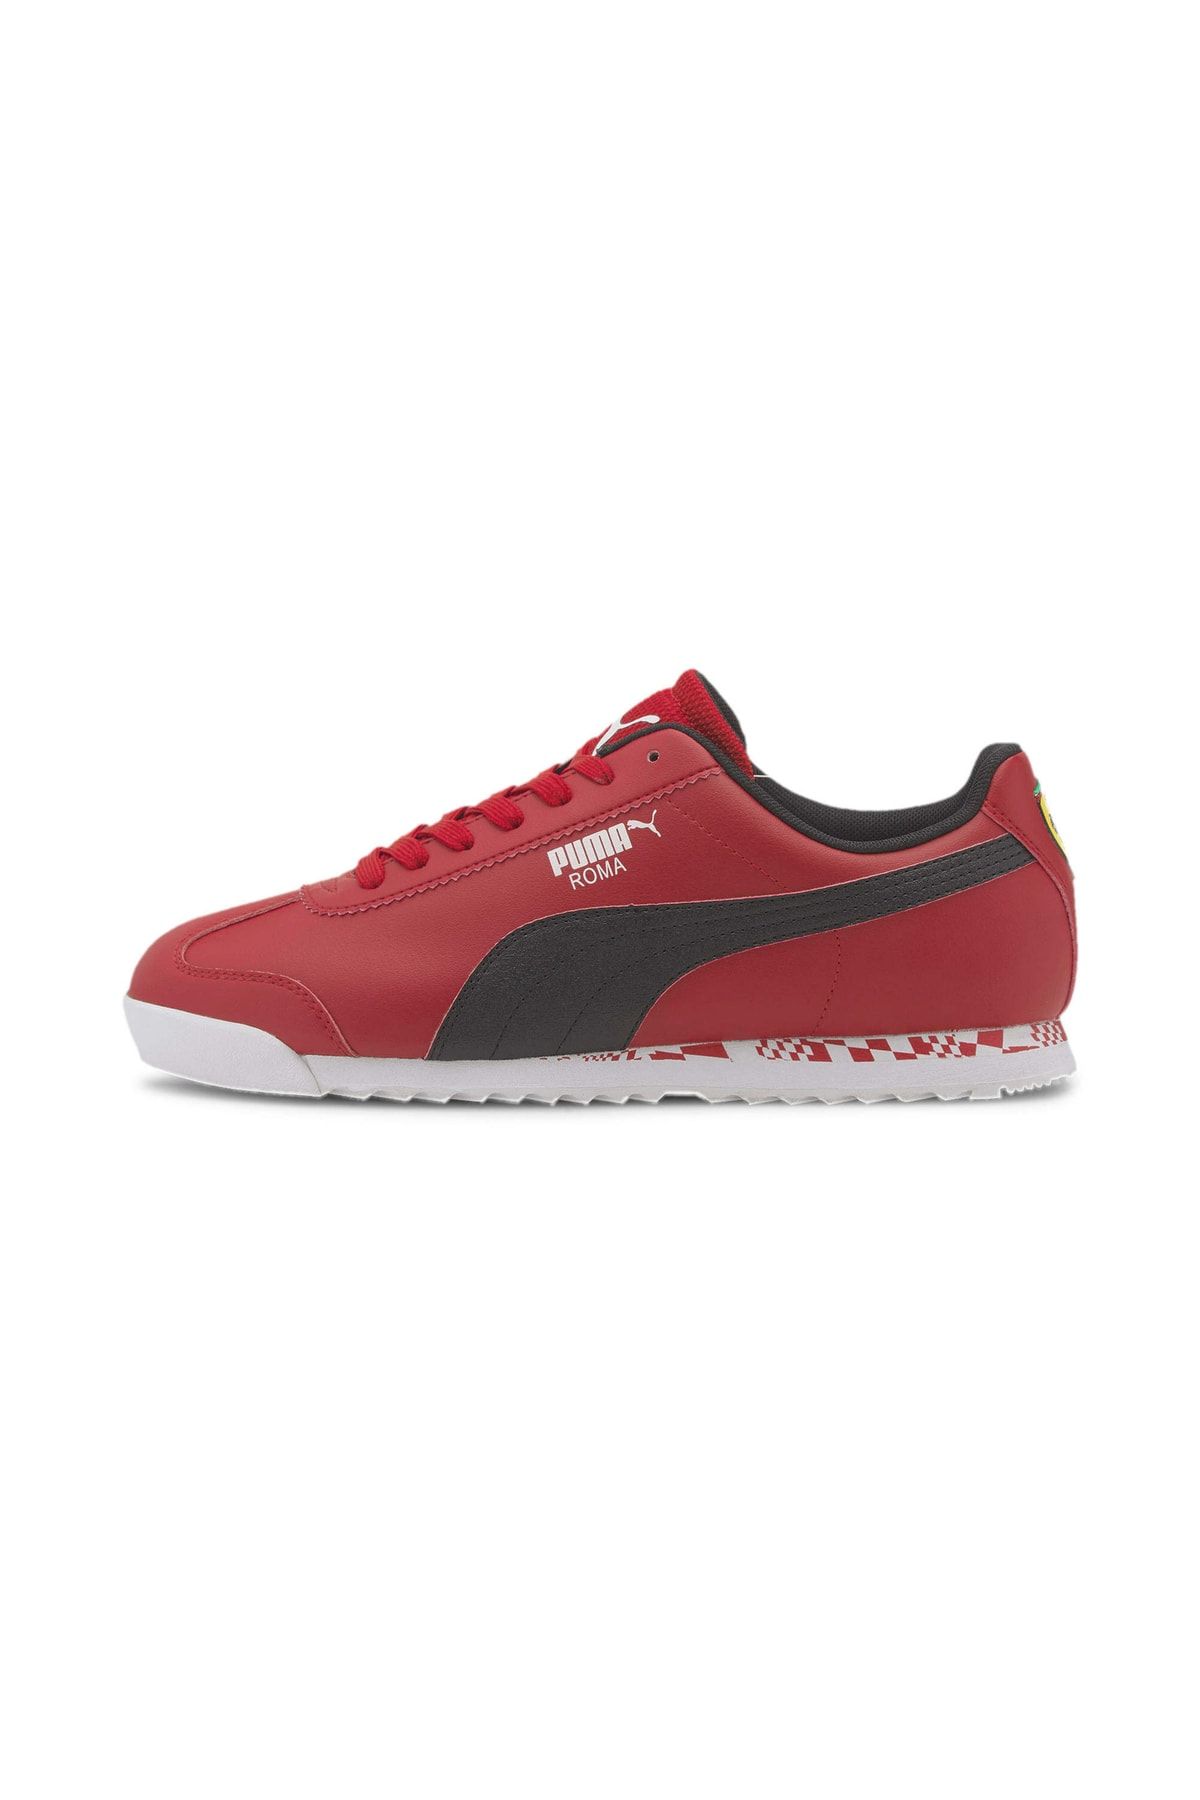 Puma FERRARI RACE ROMA Kırmızı Erkek Sneaker Ayakkabı 101119003